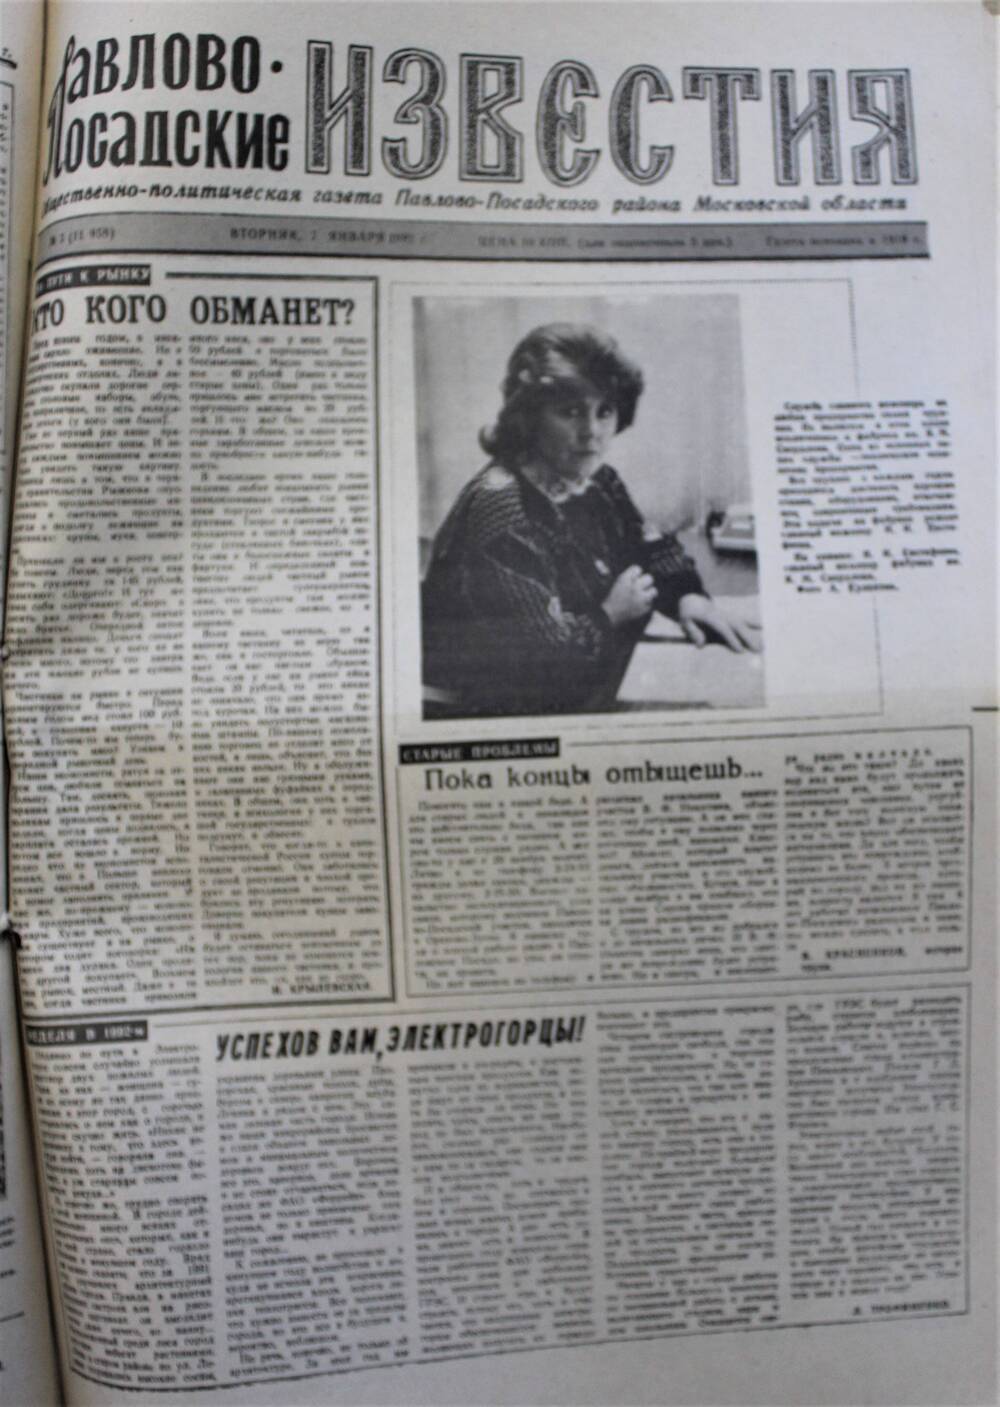 Газета Павлово-Посадские известия № 3 (11958)  от 7 января 1992 г.